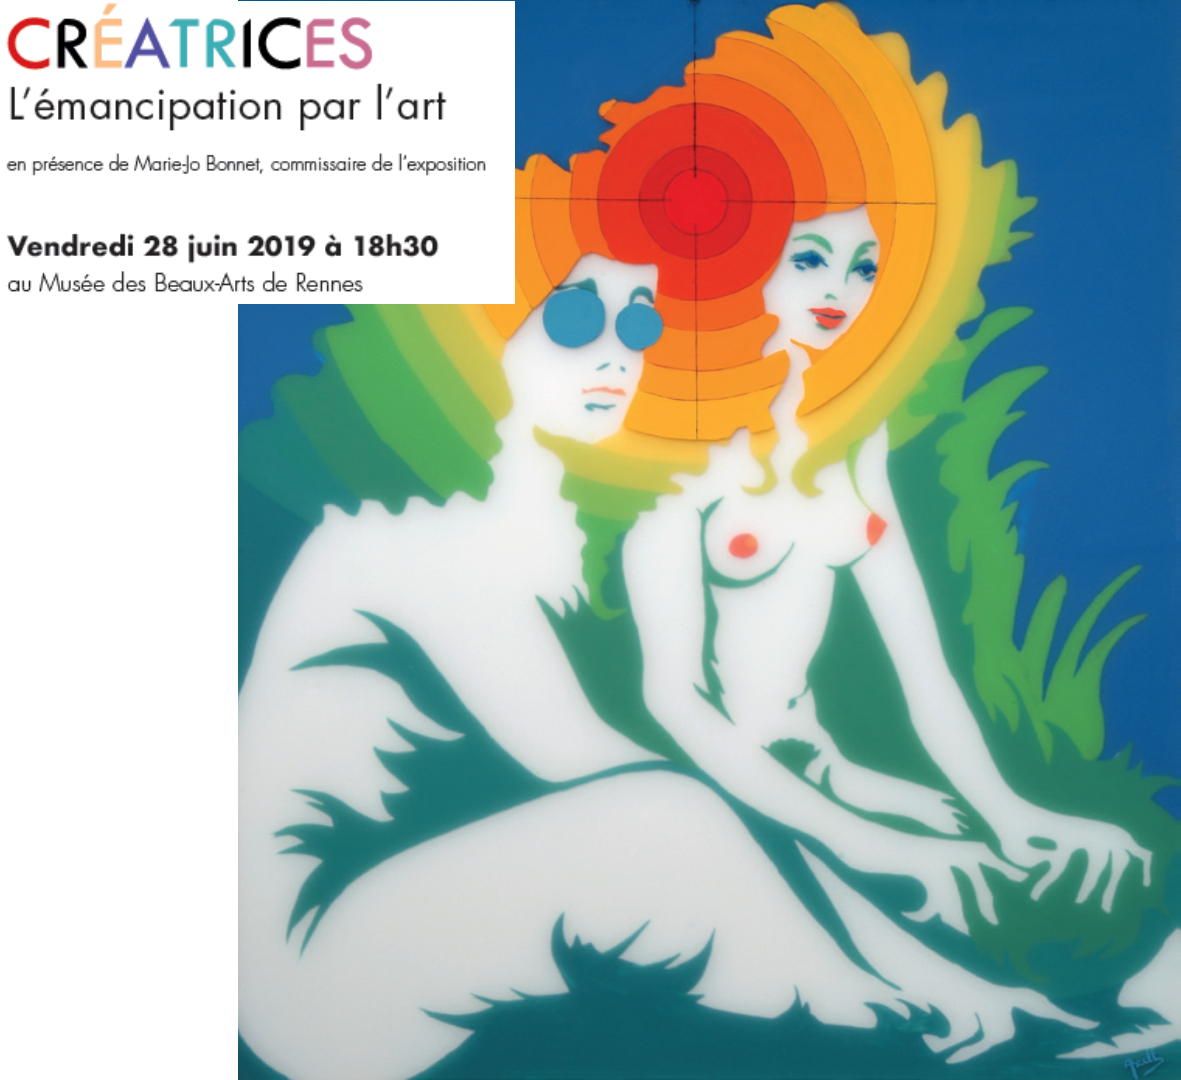 Vernissage de l'exposition "Créatrices, émancipation des femmes par l'art" le 28 Juin 2019 au musée des Beaux Arts de Rennes